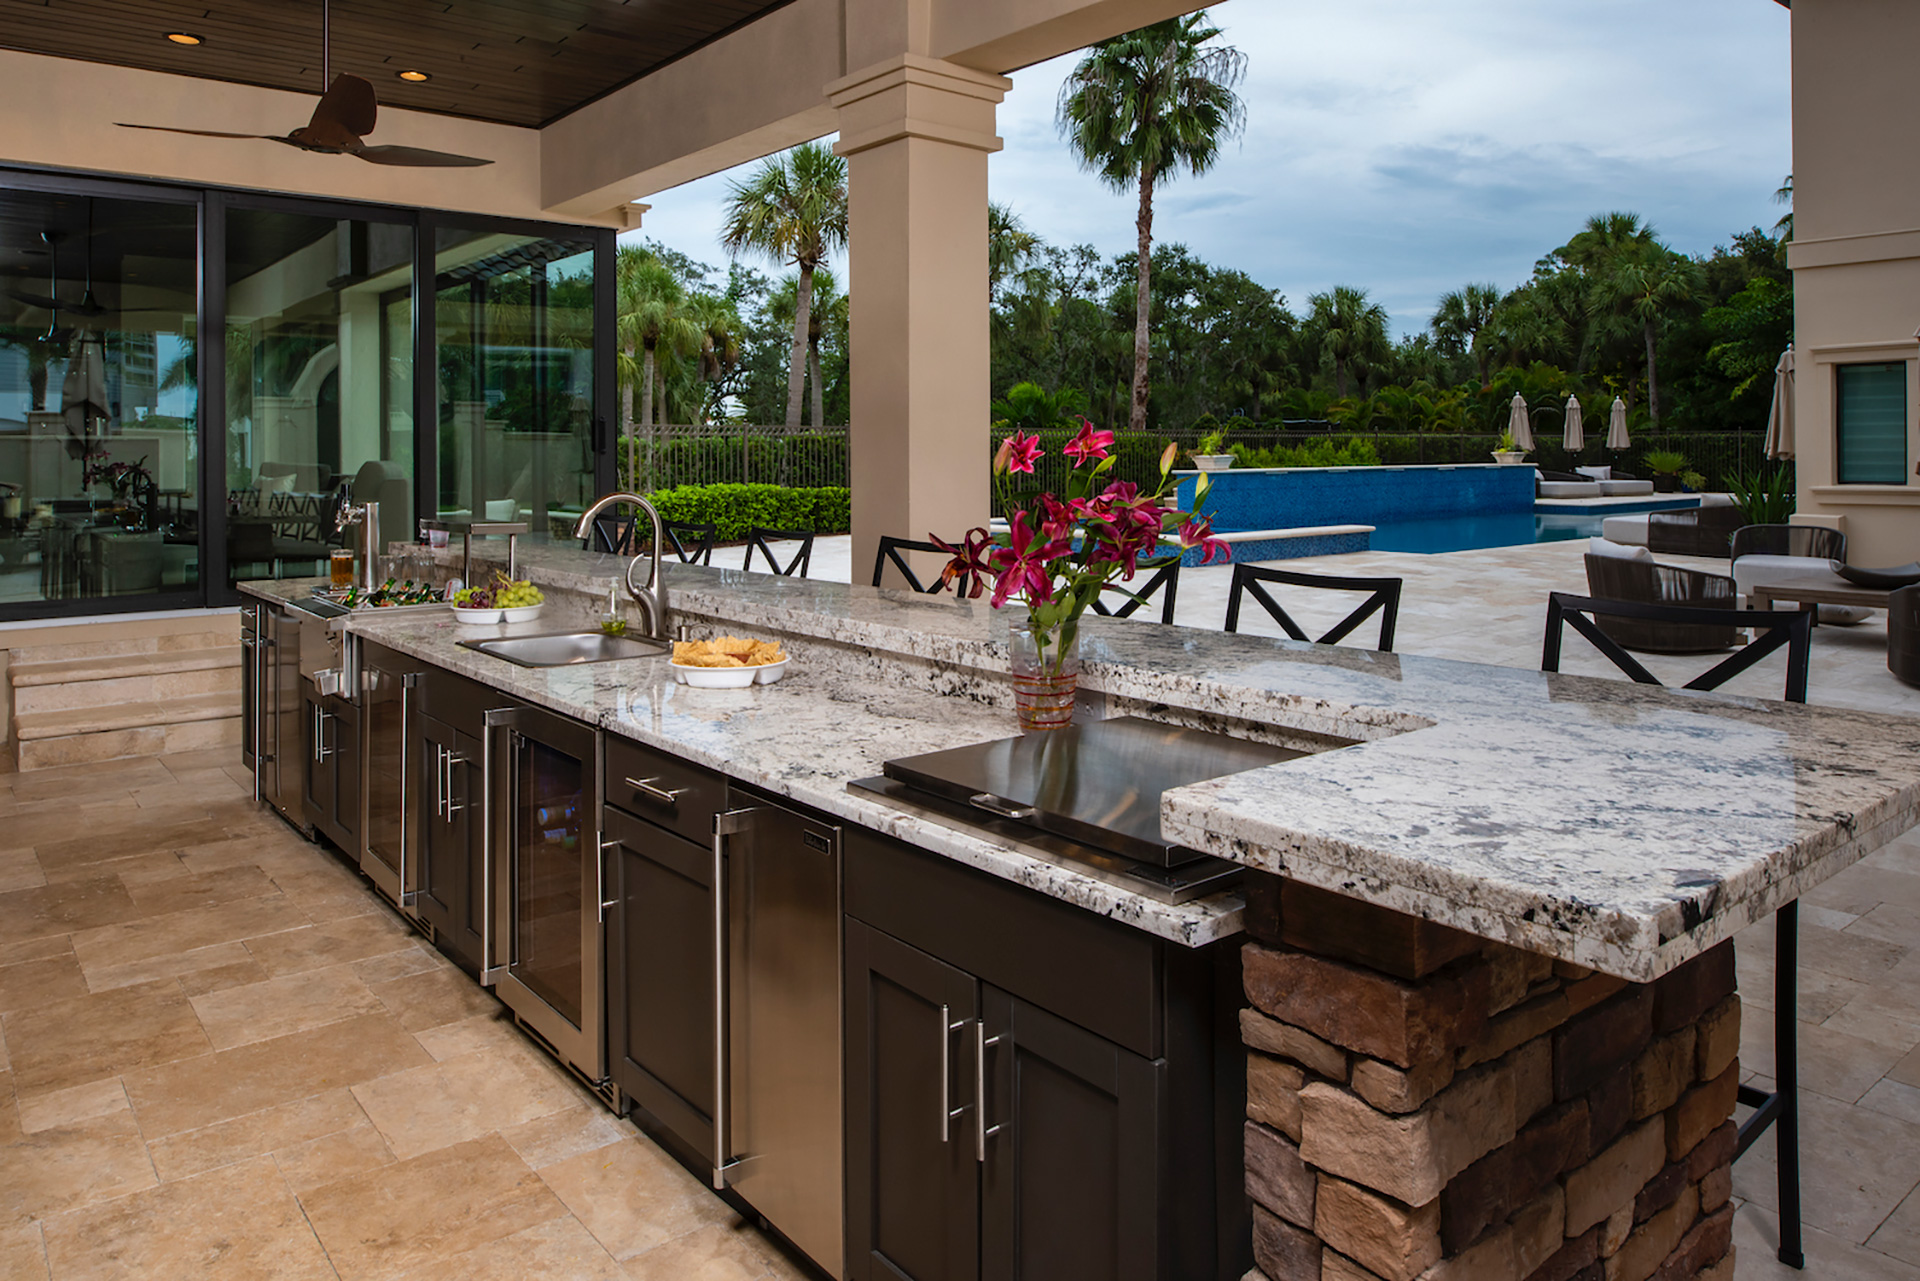 Outdoor Granite Kitchen Countertop Tips - Best Granite For ...